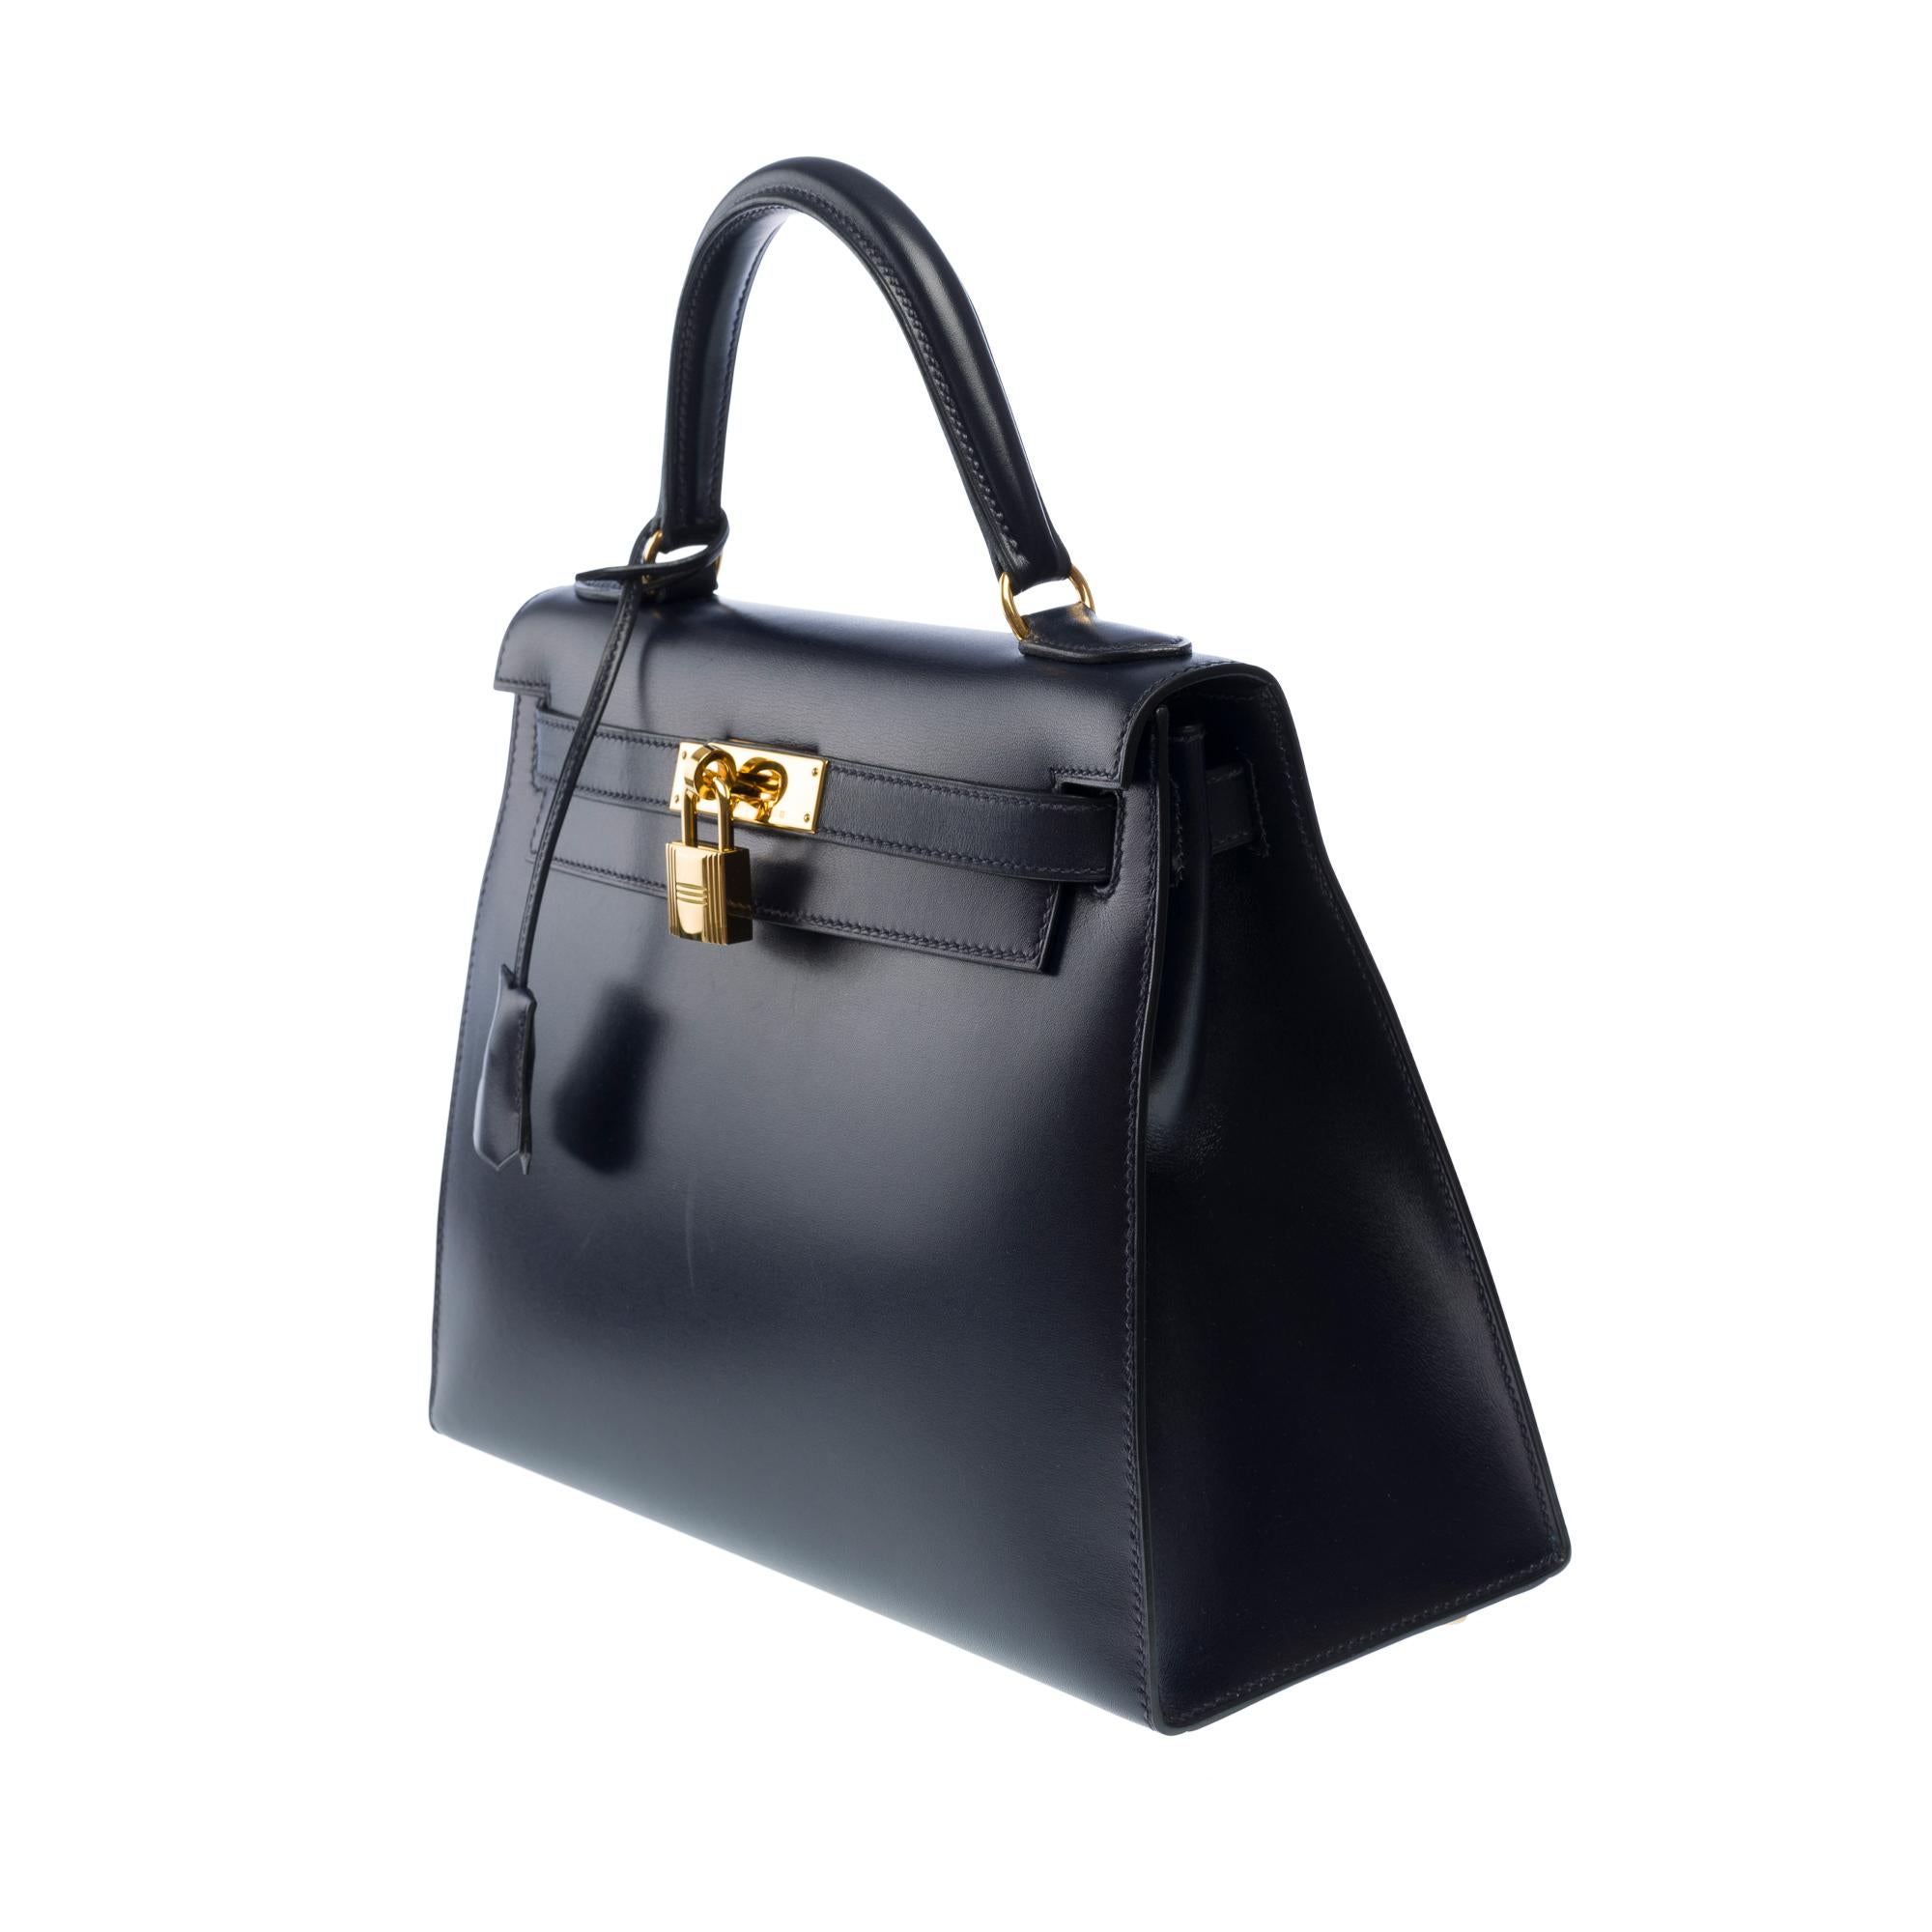 Women's Hermes Kelly 28 sellier handbag strap in Navy Blue box calfskin leather, GHW For Sale